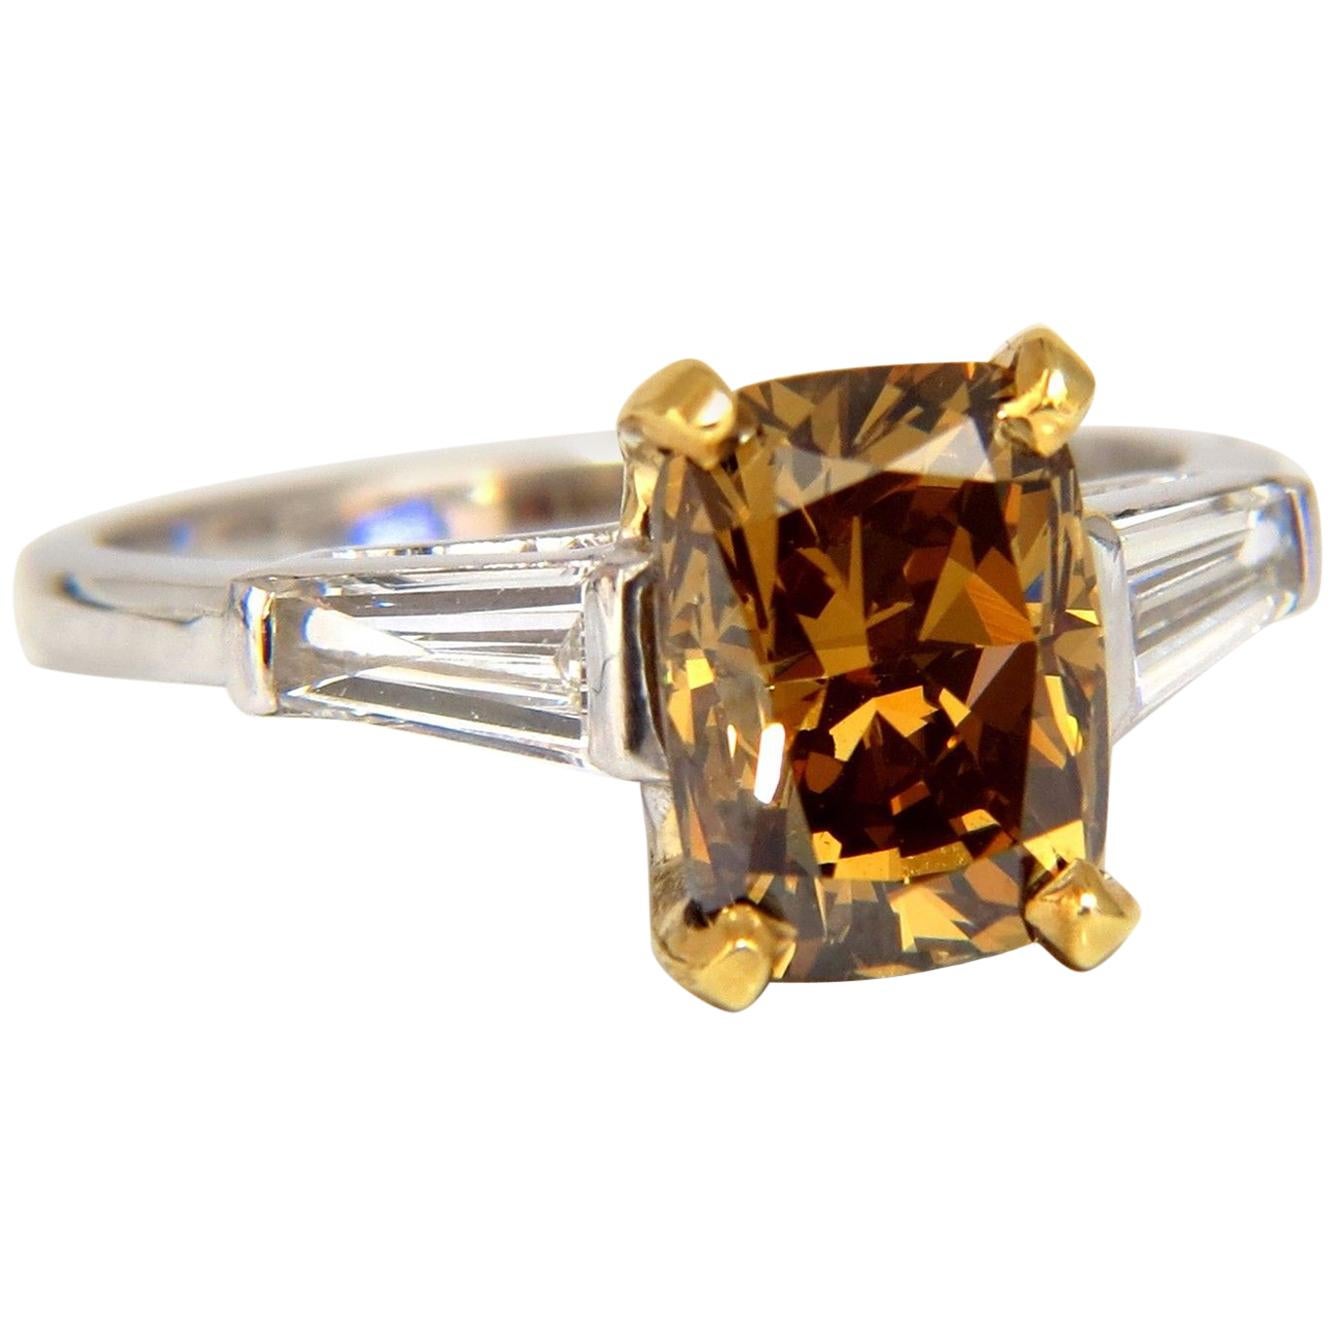 Bague en platine avec diamant brun jaune fantaisie de 2,59 carats certifié par le GIA